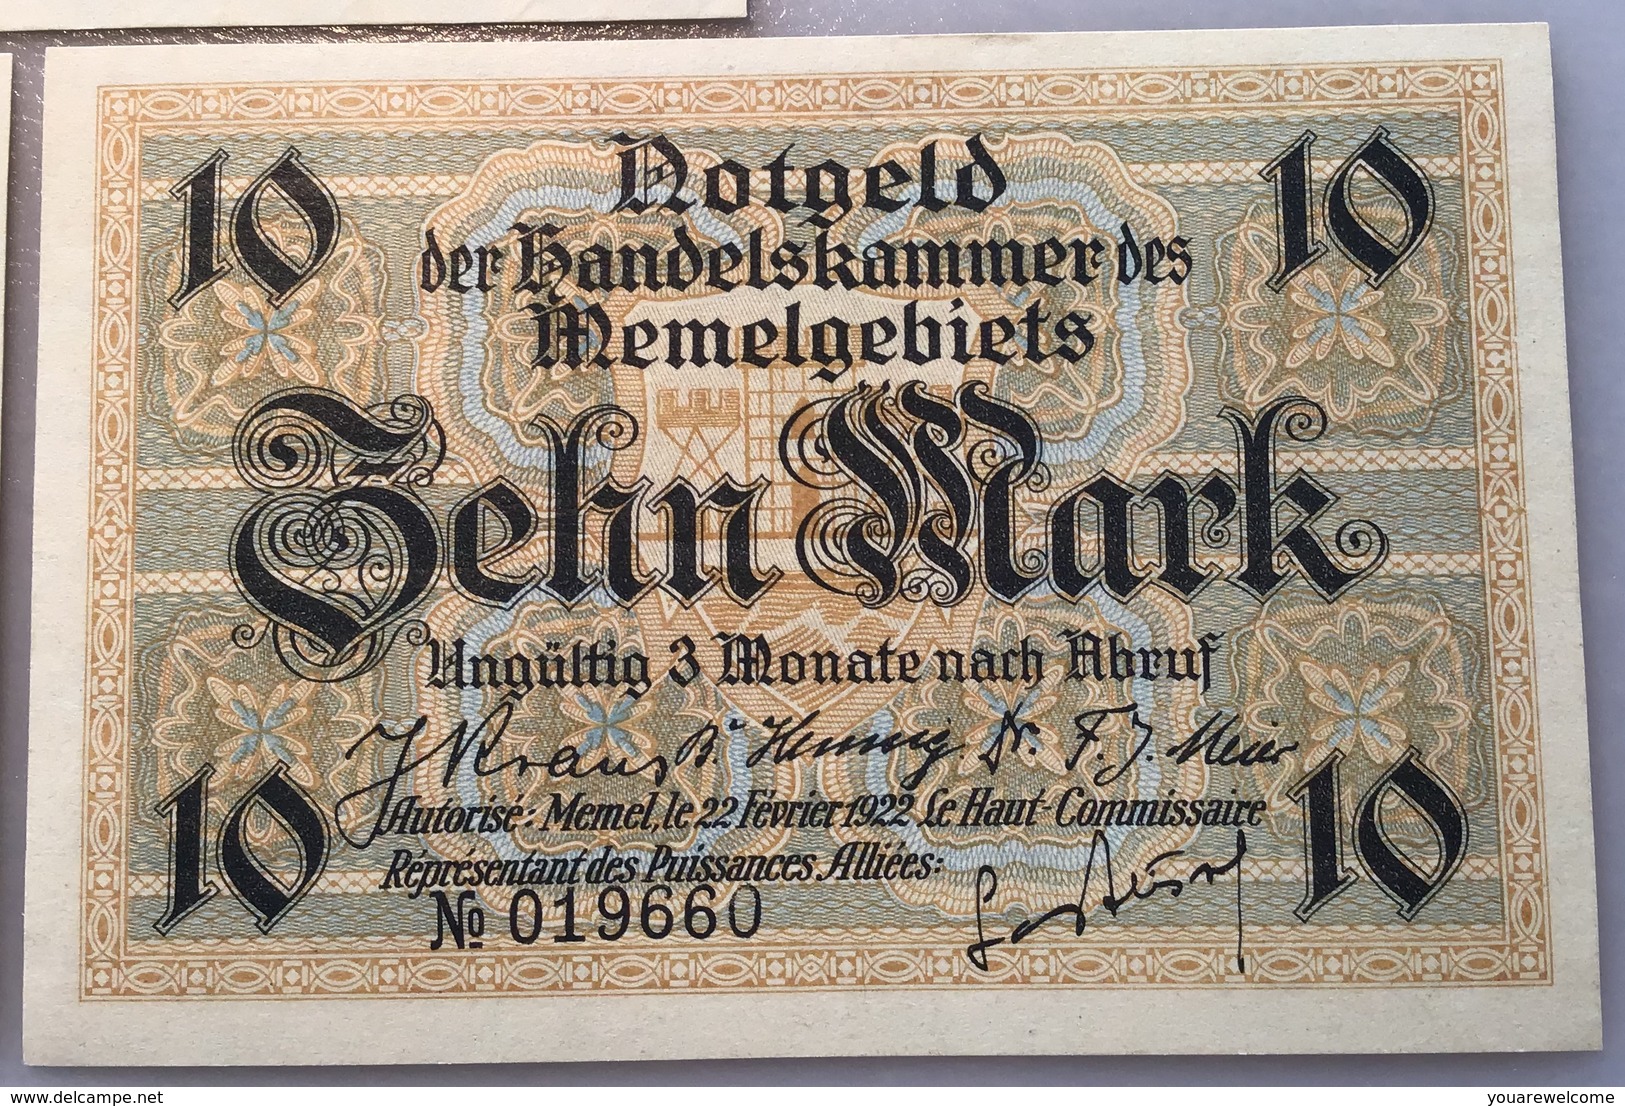 Memel 1922 Ro.846a-850a UNC, Notgeld Handelskammer Memelgebiet(Russia Geldschein Banknote Billet  France Lithuania - WWI